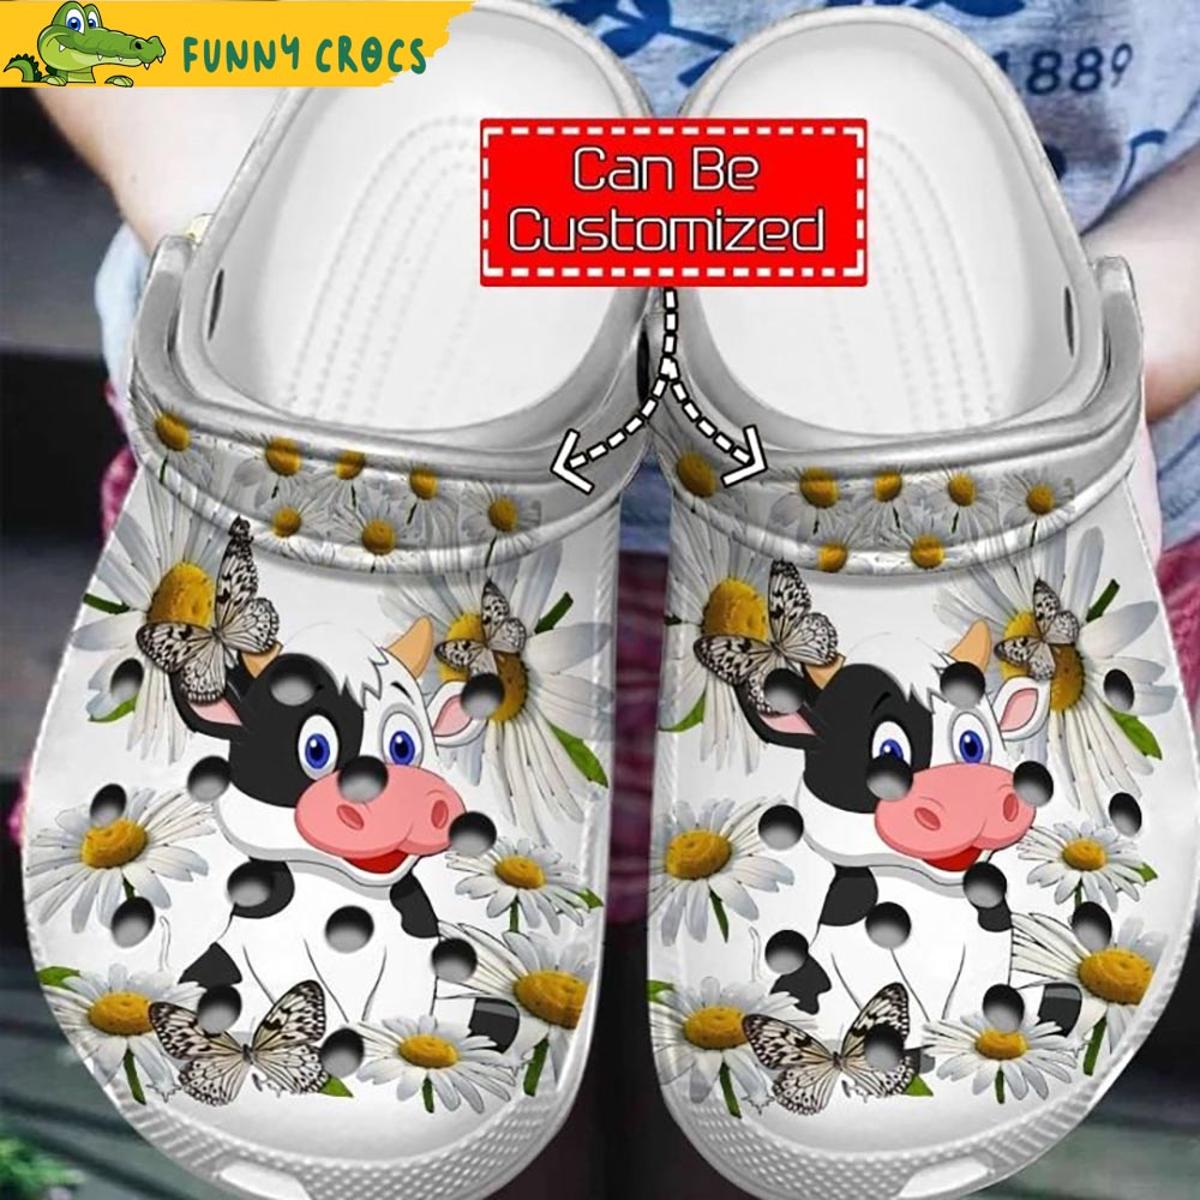 Custom Cow Crocs Shoes